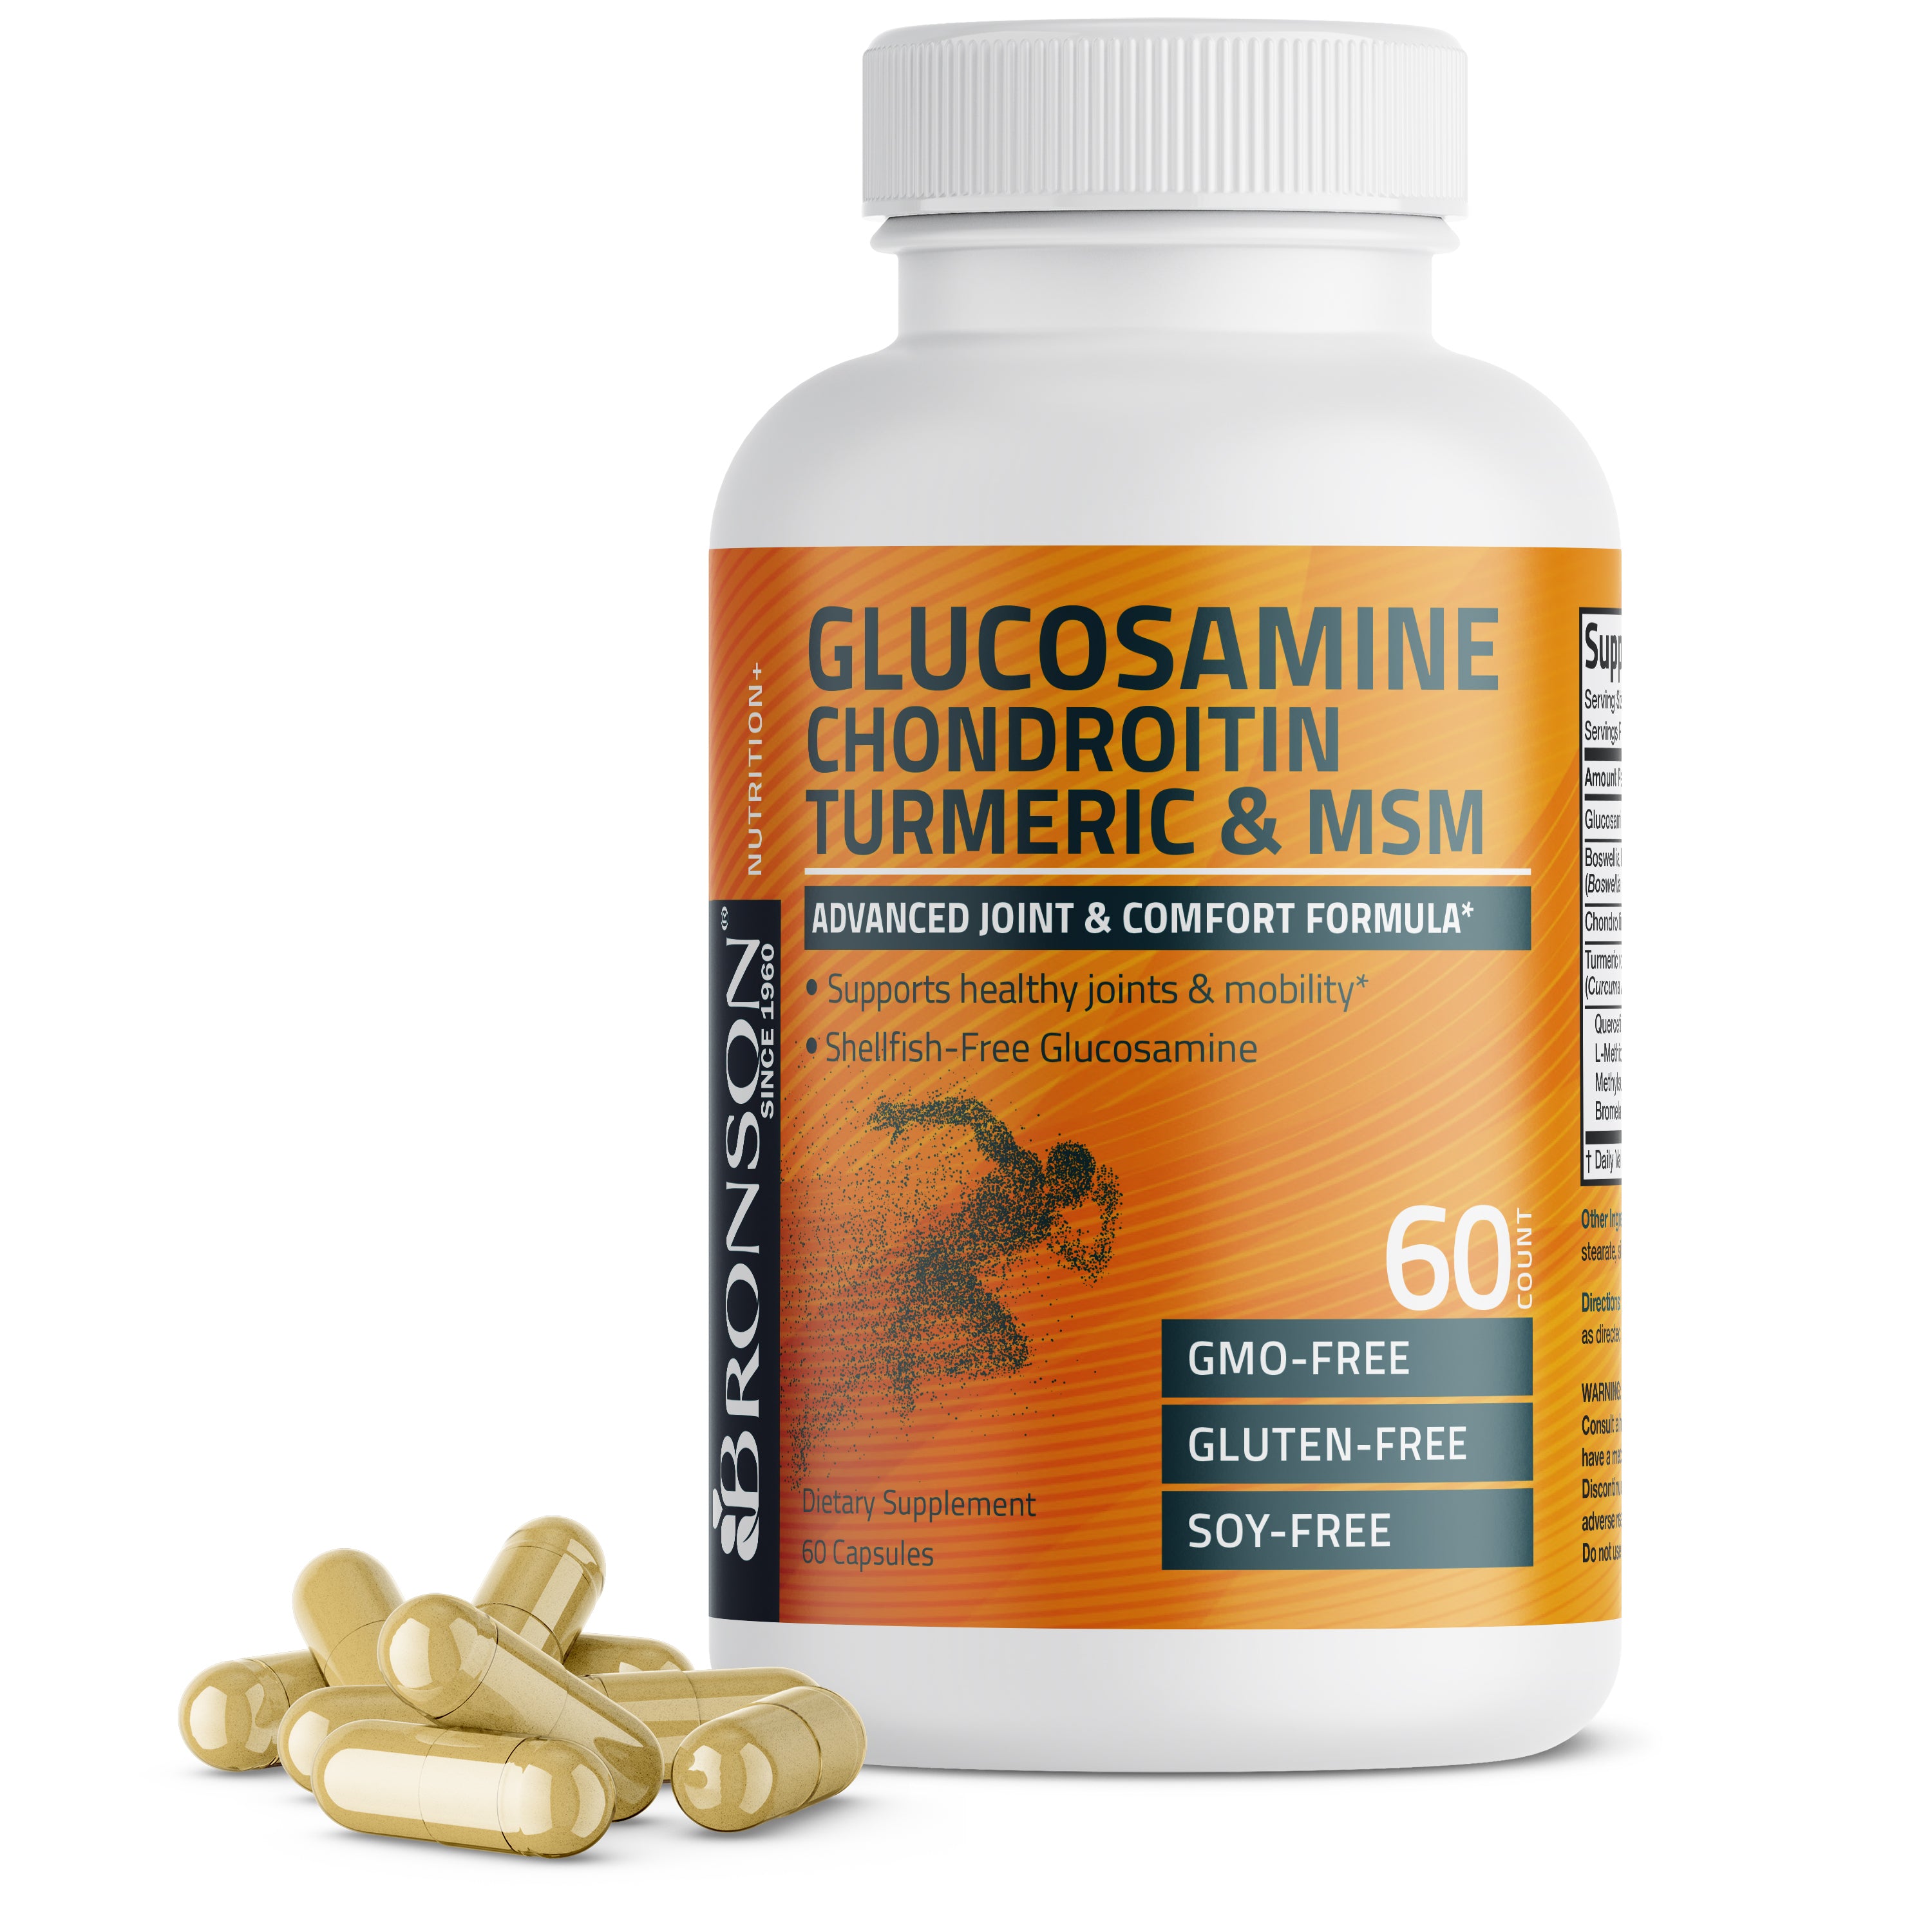 Glucosamine Chondroitin Turmeric & MSM view 18 of 6